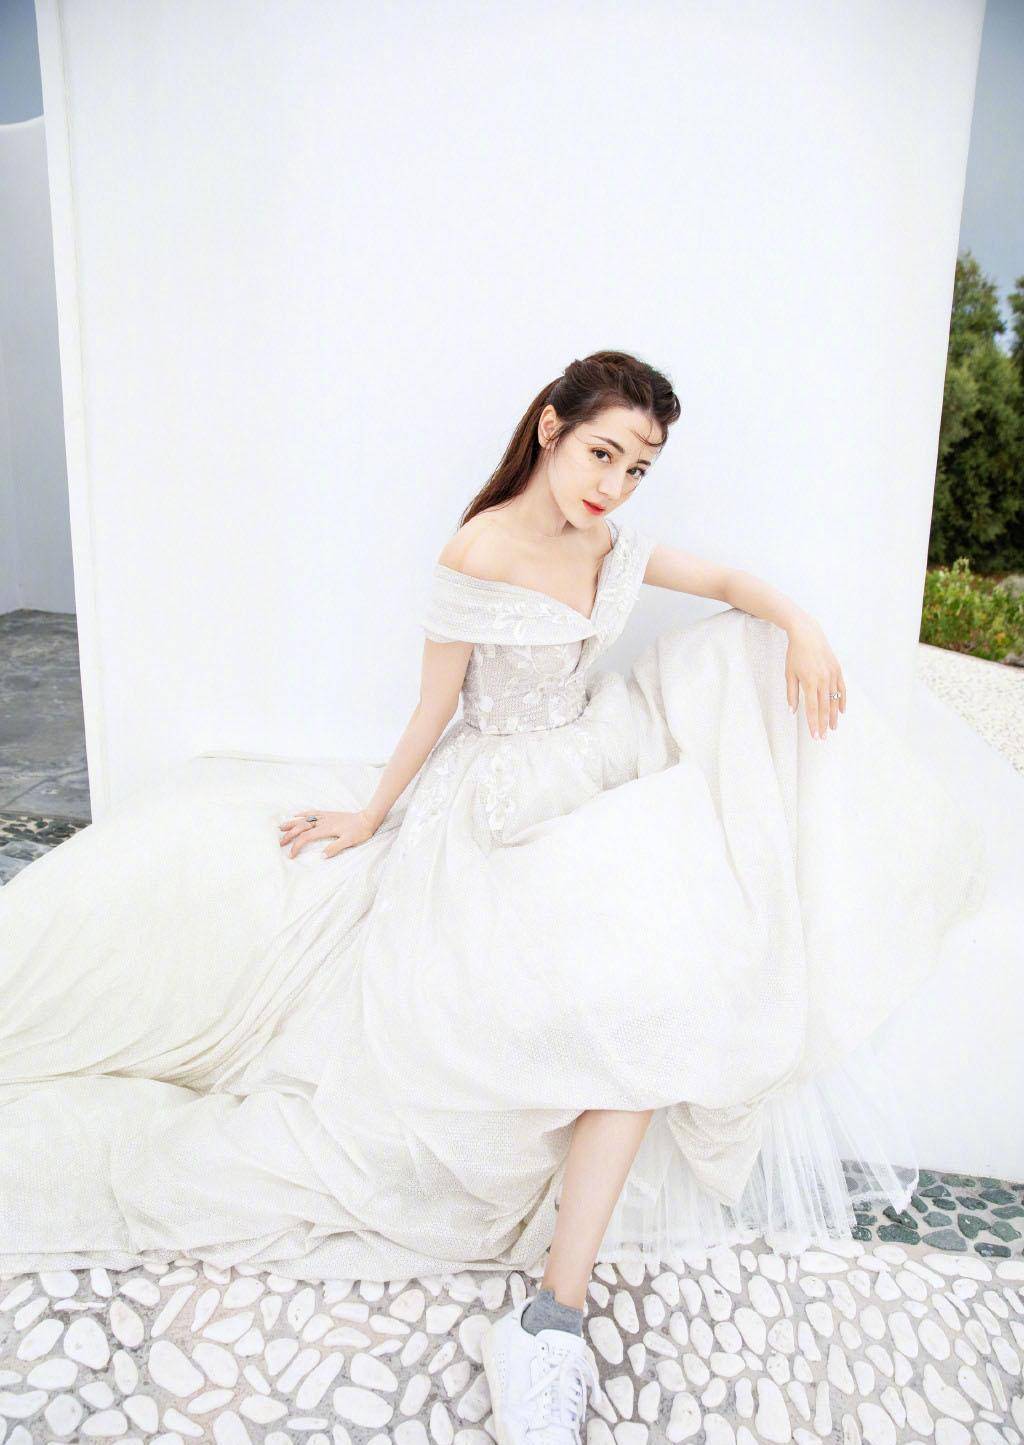 极品美女明星迪丽热巴,时尚迷人婚纱写真图片,唯美典雅自带仙气